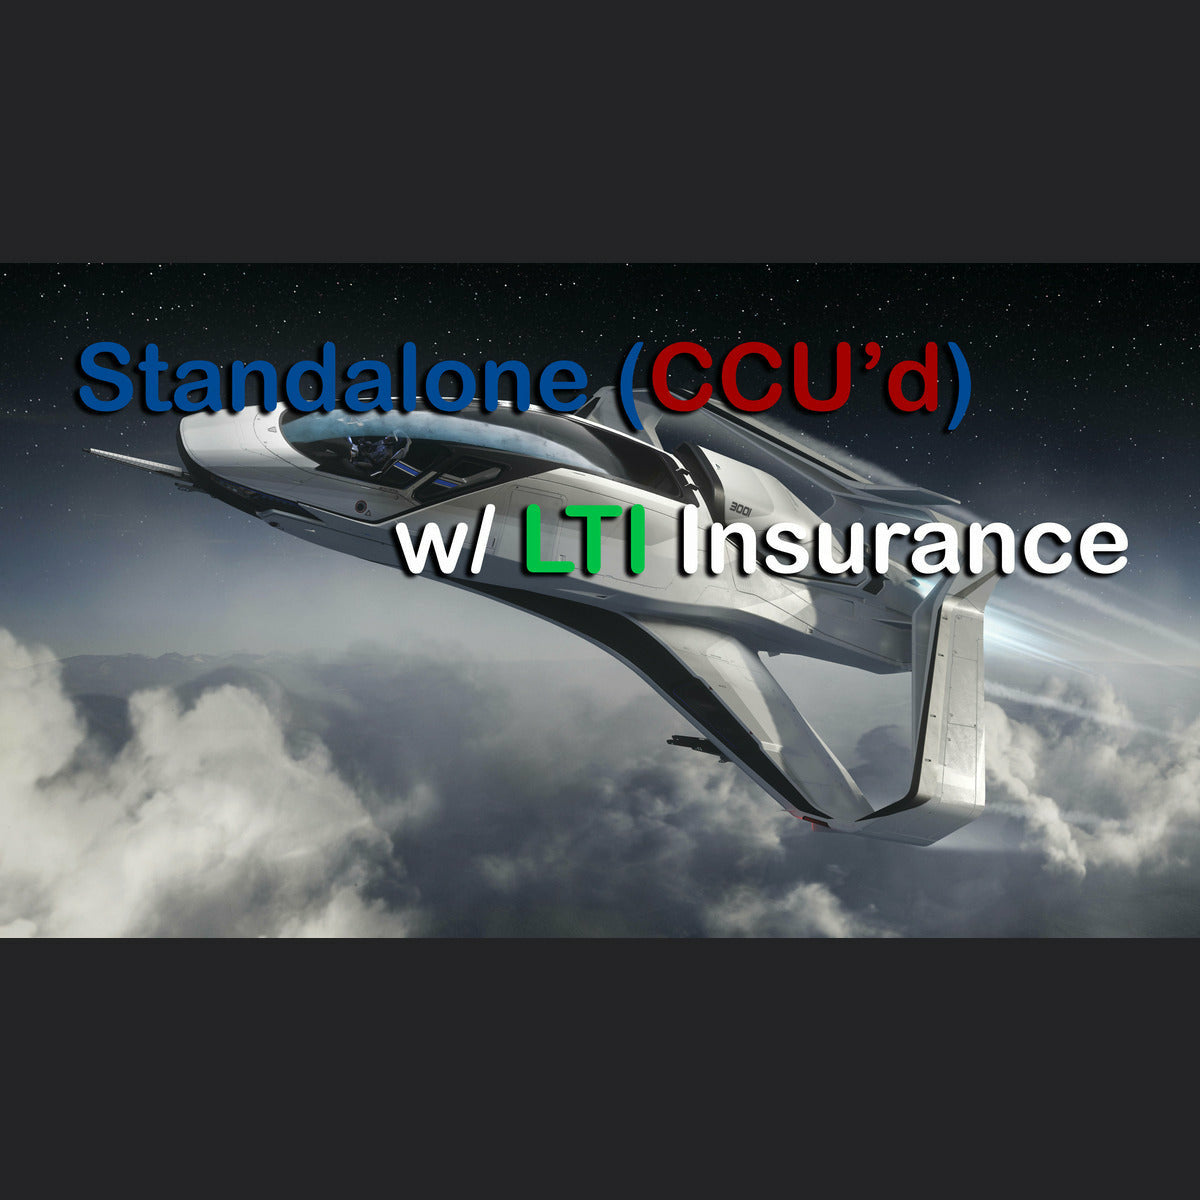 300i - LTI Insurance